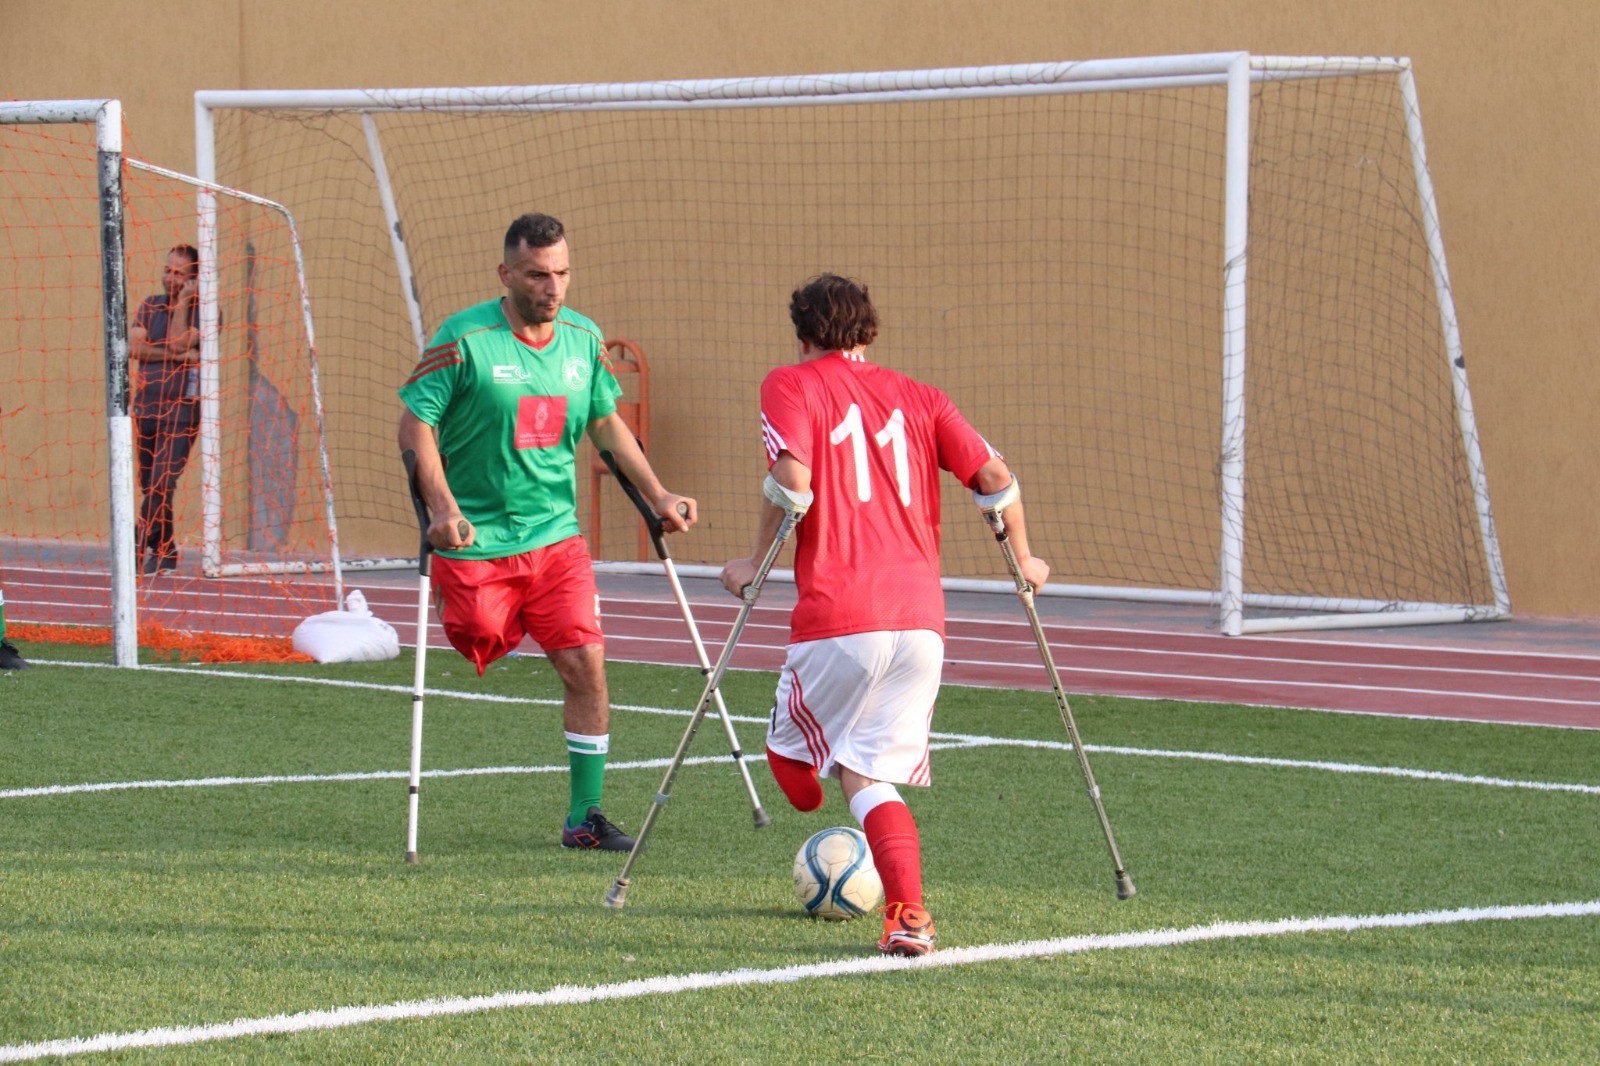 بطولة كأس القطاع لكرة القدم البتر بدعم من بنك فلسطين وبتنظيم من اللجنة البارالمبية